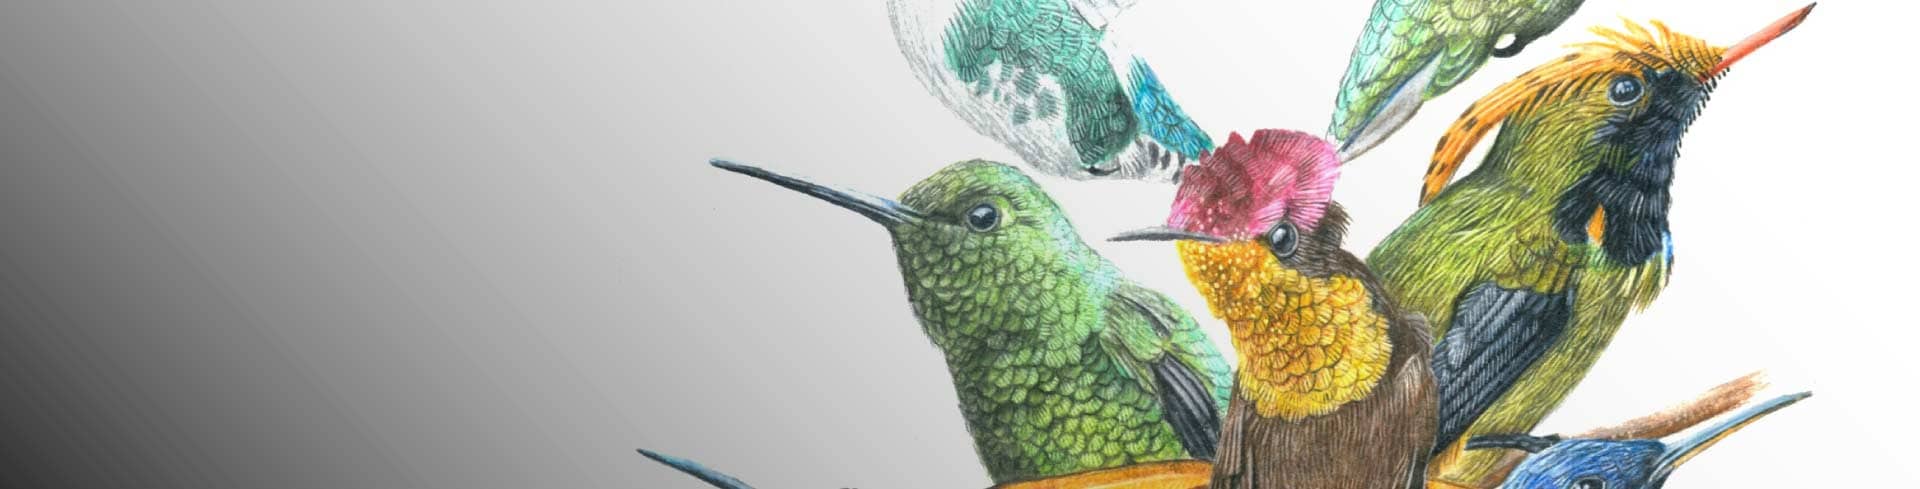 Aves ilustradas: morfología, color y texturas